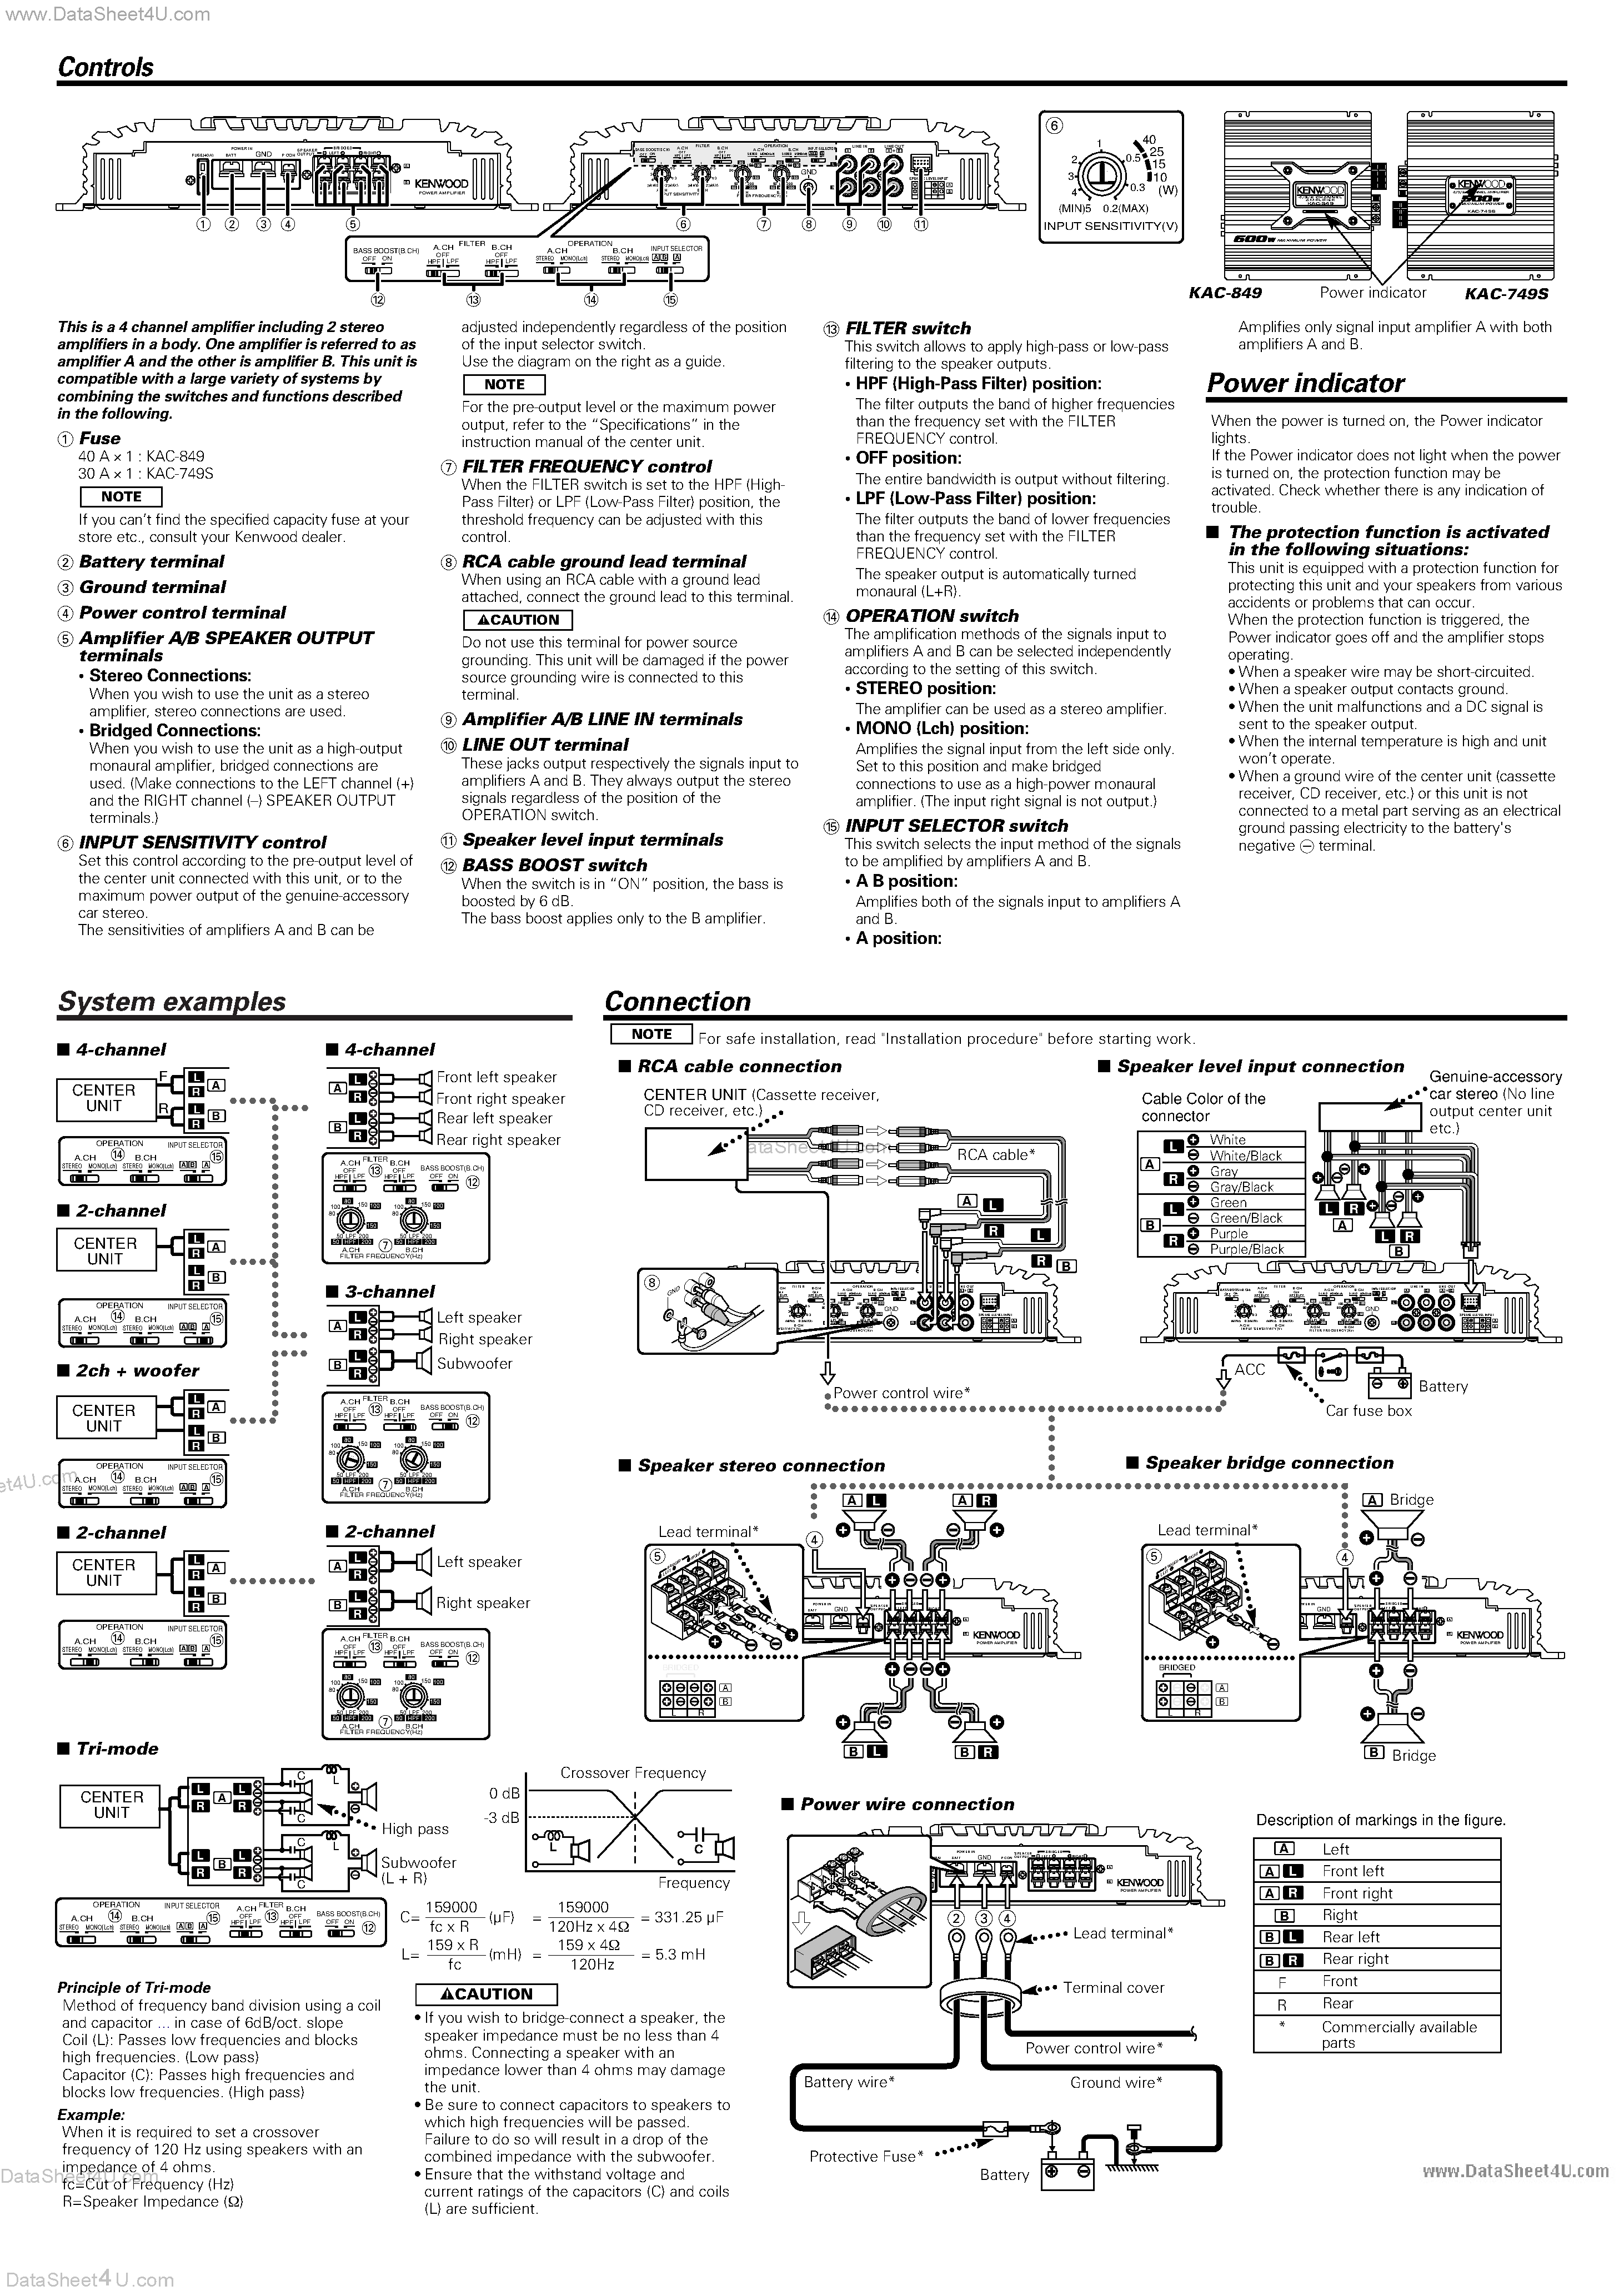 Datasheet KAC-849 - (KAC-749S / KAC-849) Manual page 2